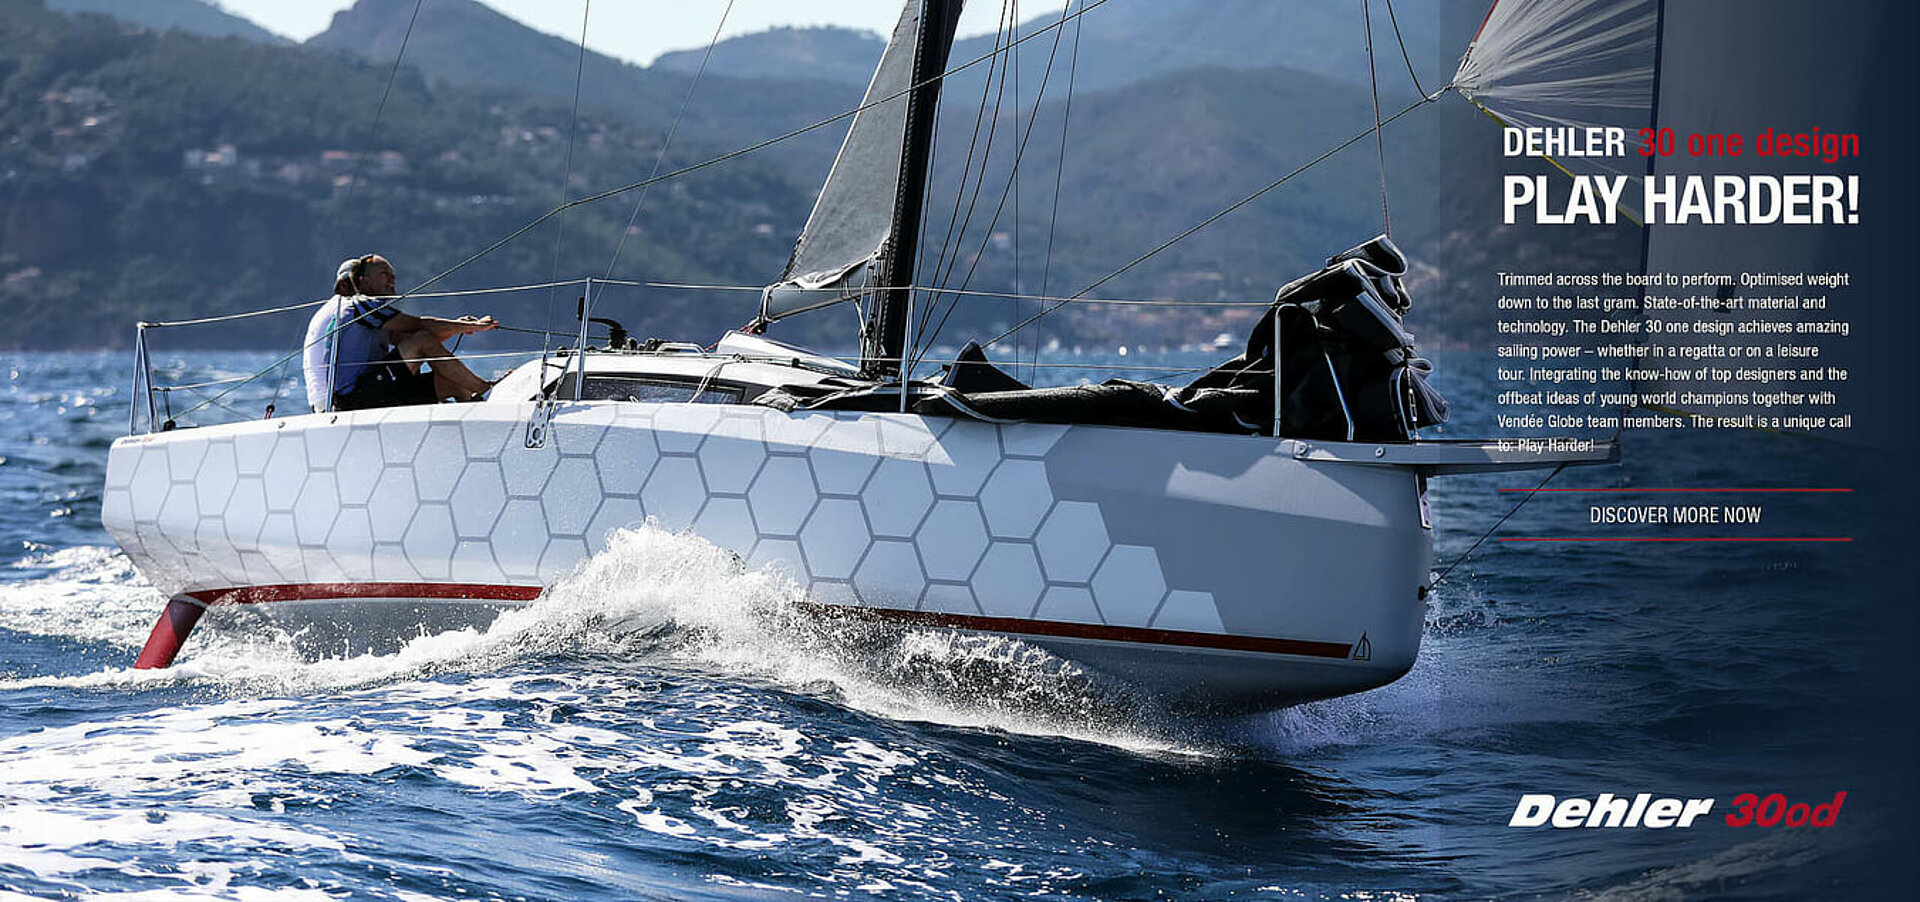 Dehler 30 one design barca a vela ad alte prestazioni fatta per le regate a vela